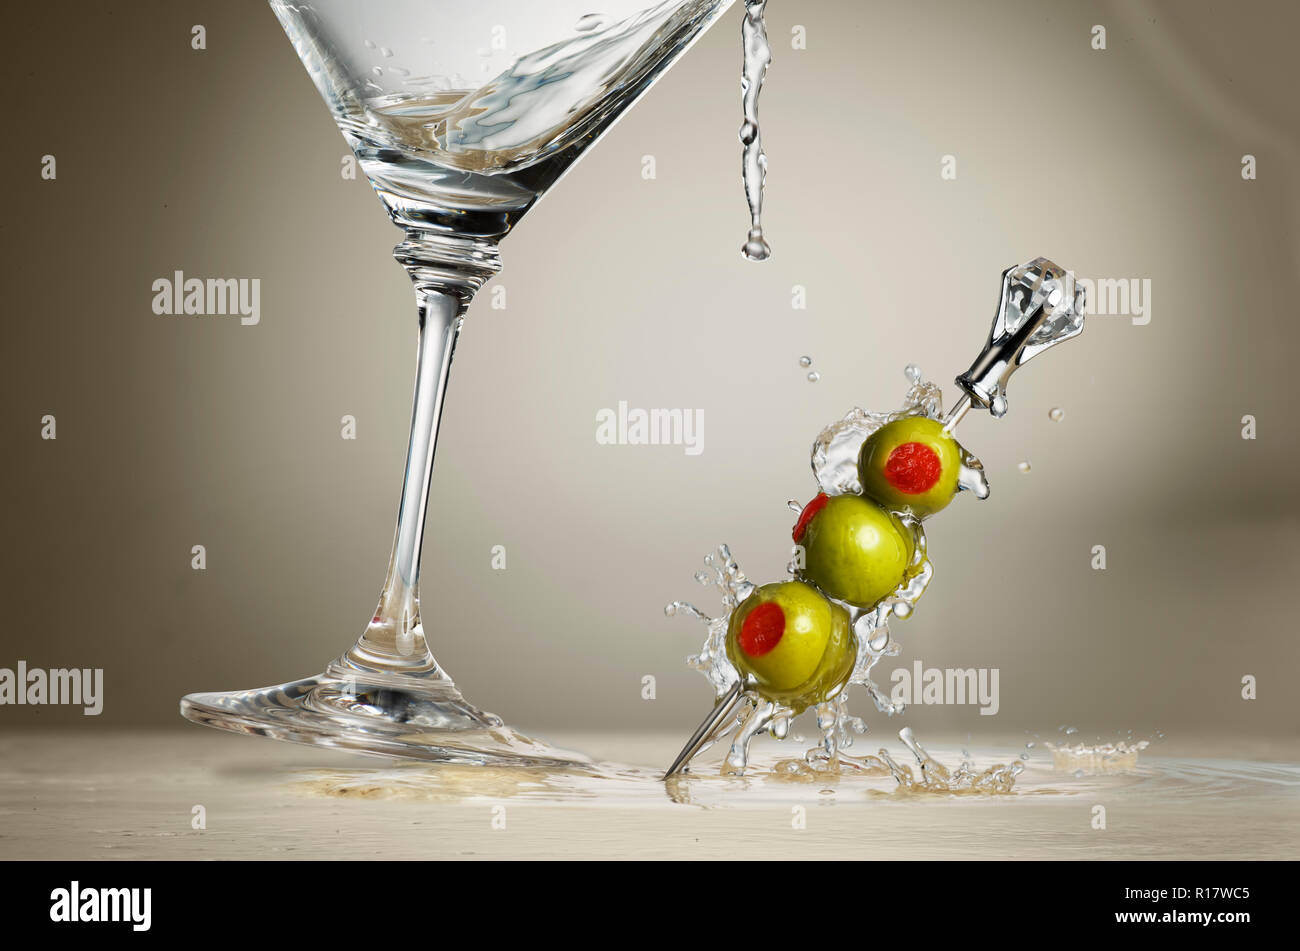 Immagine ritagliata della coppetta Martini gli spruzzi di liquido e olive sulla superficie e sfondo grigio Foto Stock